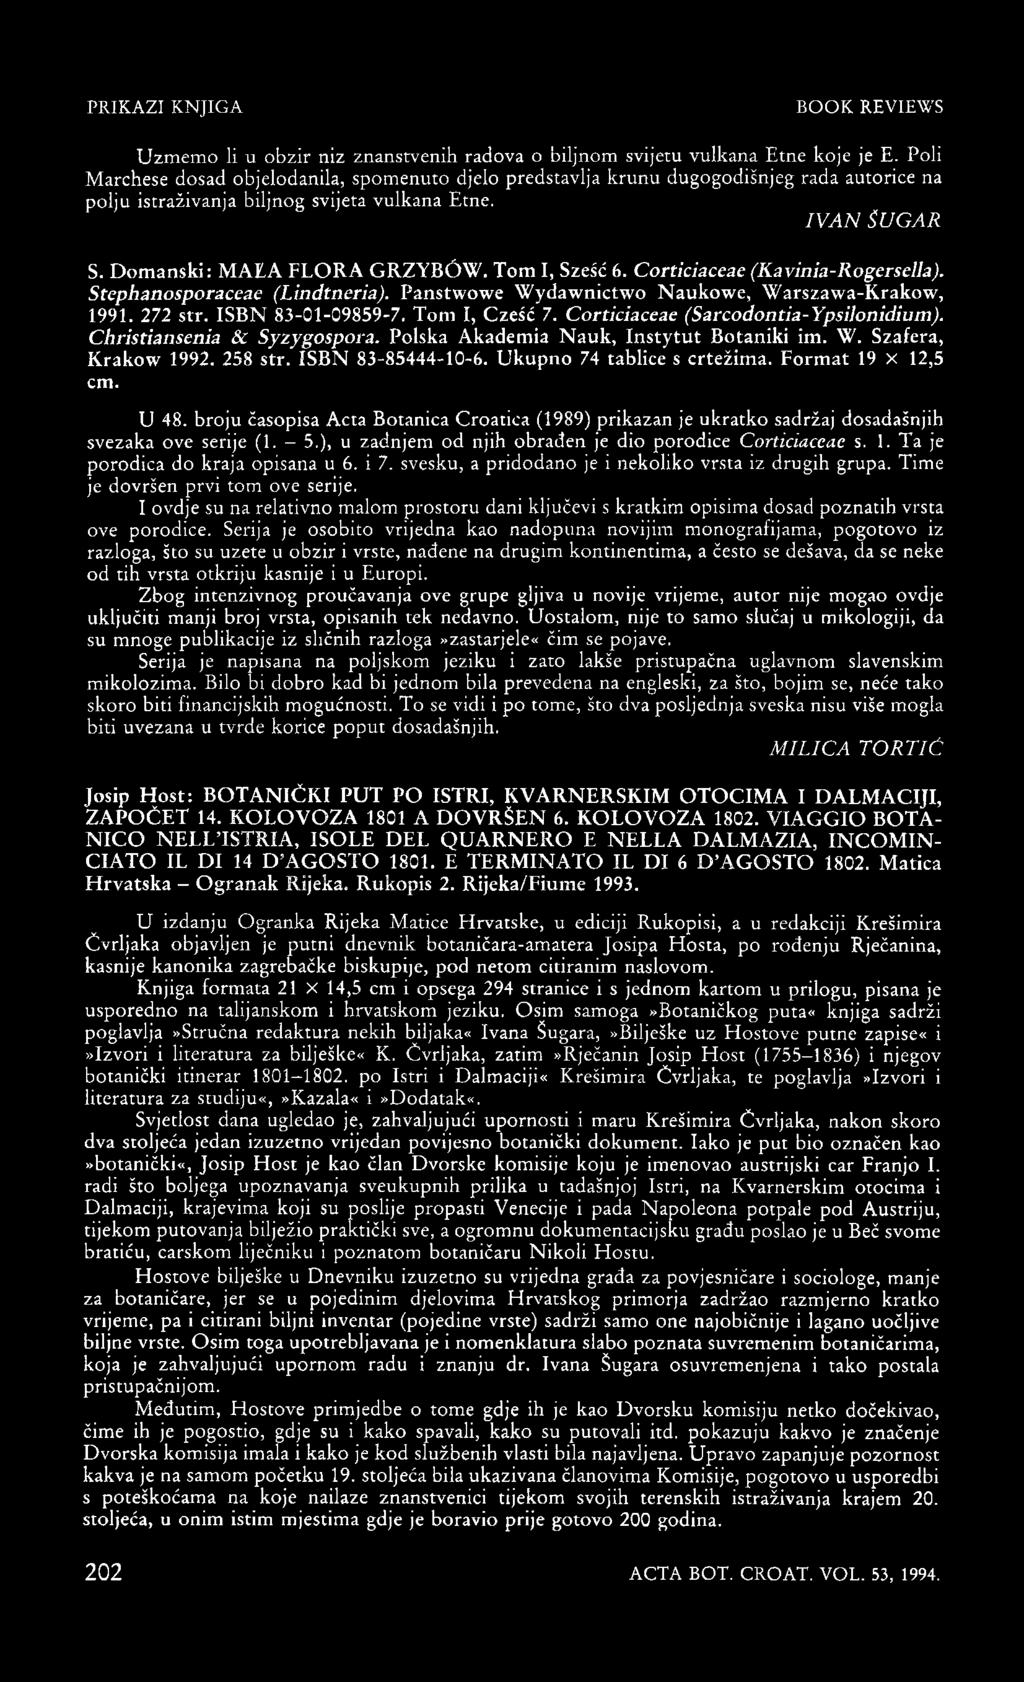 Tom I, Szešć 6. Corticiaceae (Kavinia-Rogersella). Stephanosporaceae (Lindtneria). Panstwowe Wydawnictwo Naukowe, Warszawa-Krakow, 1991. 272 str. ISBN 83-01-09859-7. Toni I, Czešć 7.